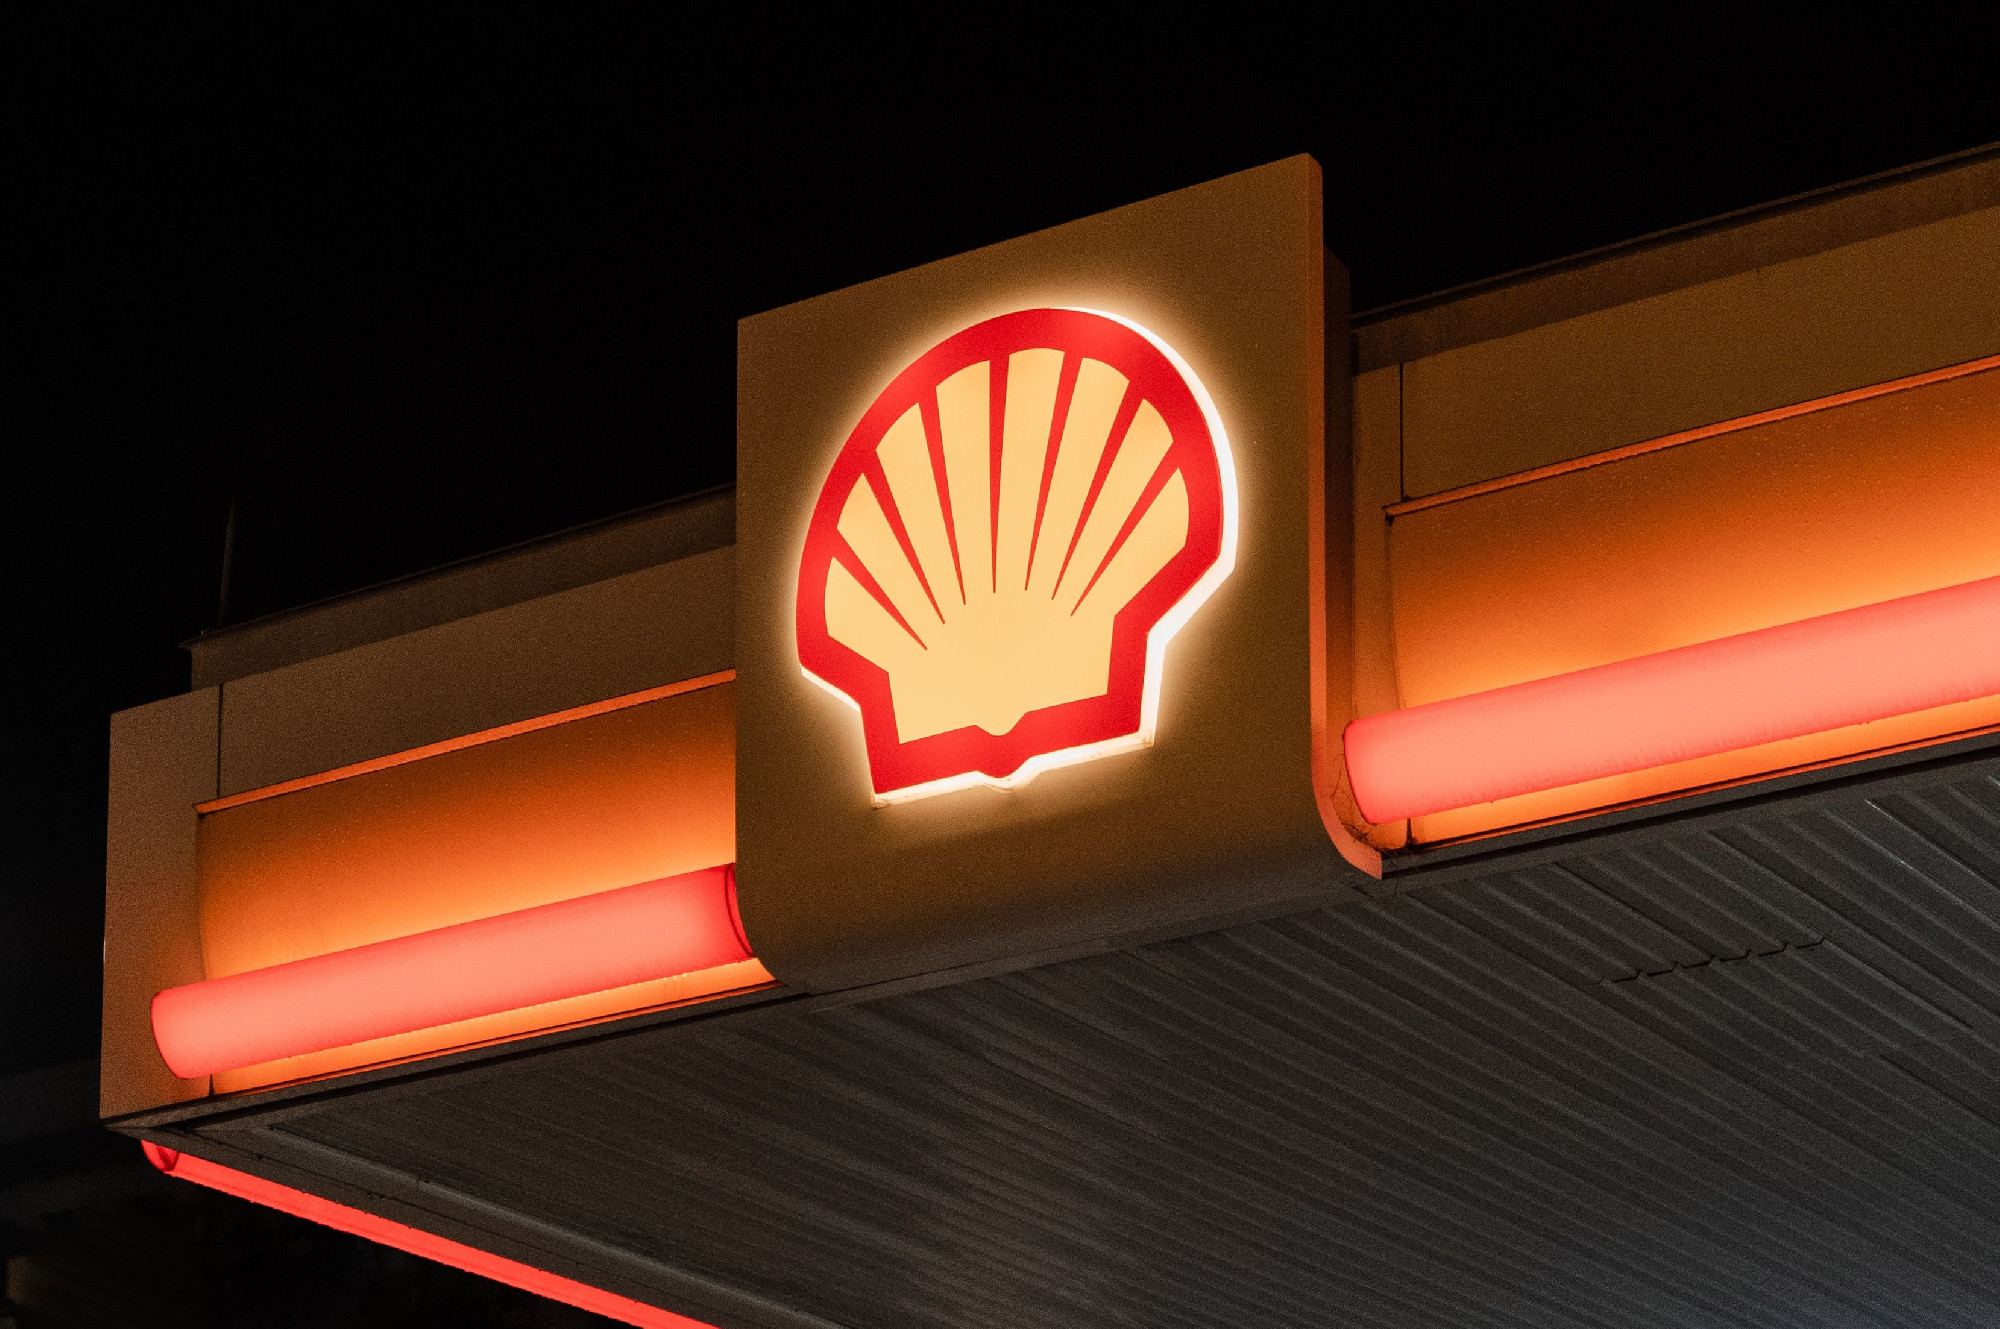 A Shell-vezér szerint eljöhet az idő, amikor fejadagolnunk kell a gázt